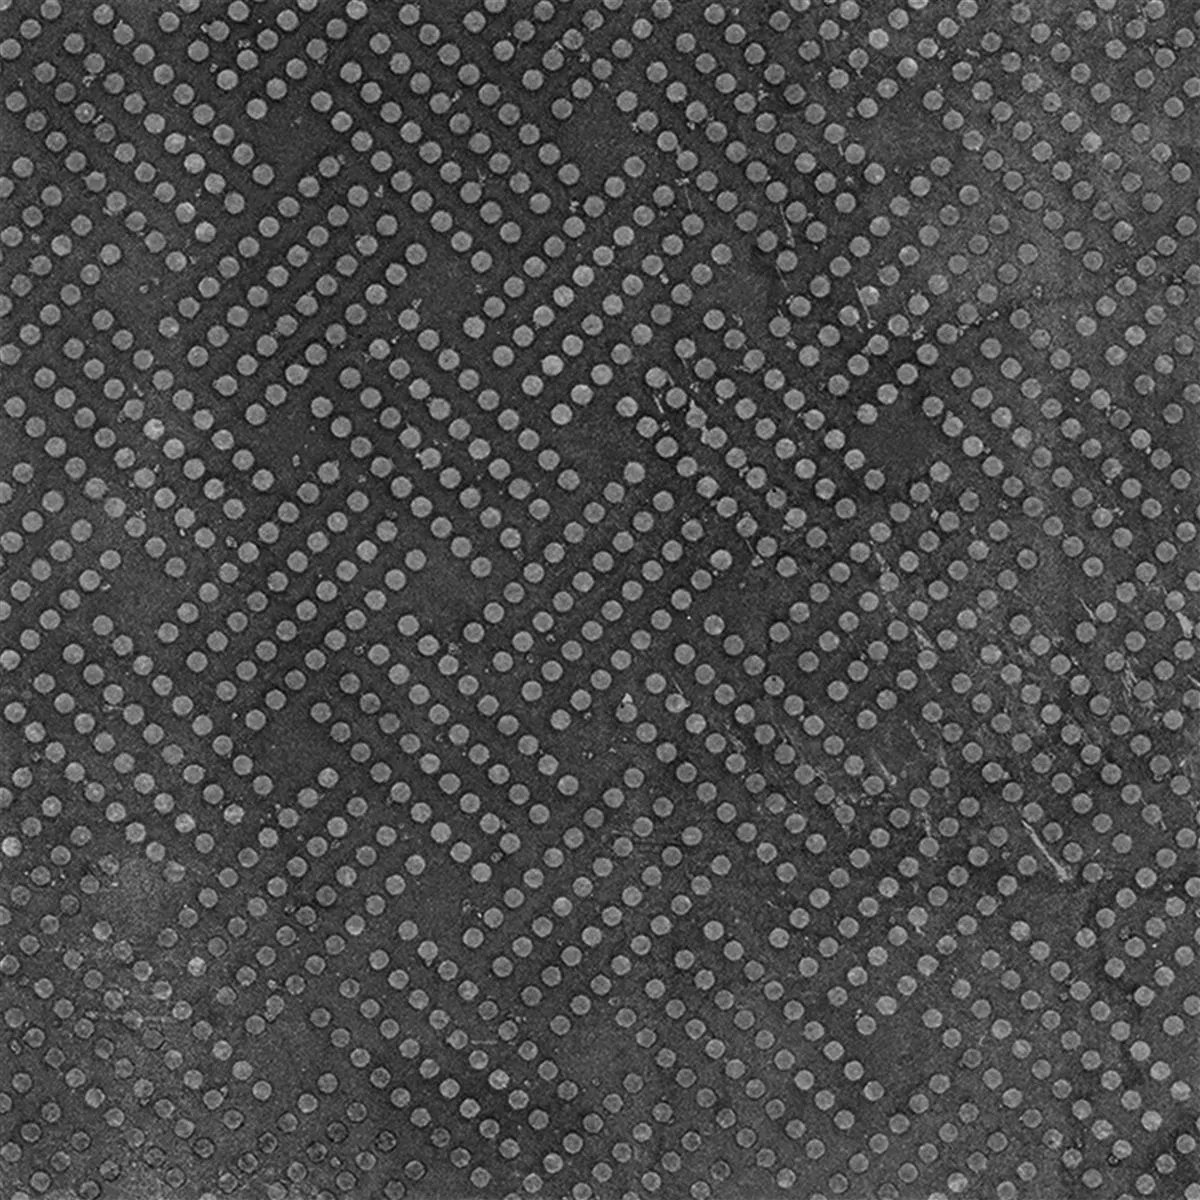 Πλακάκια Δαπέδου Chicago Μεταλλική Εμφάνιση Ανθρακίτης R9 - 18,5x18,5cm Pattern 1